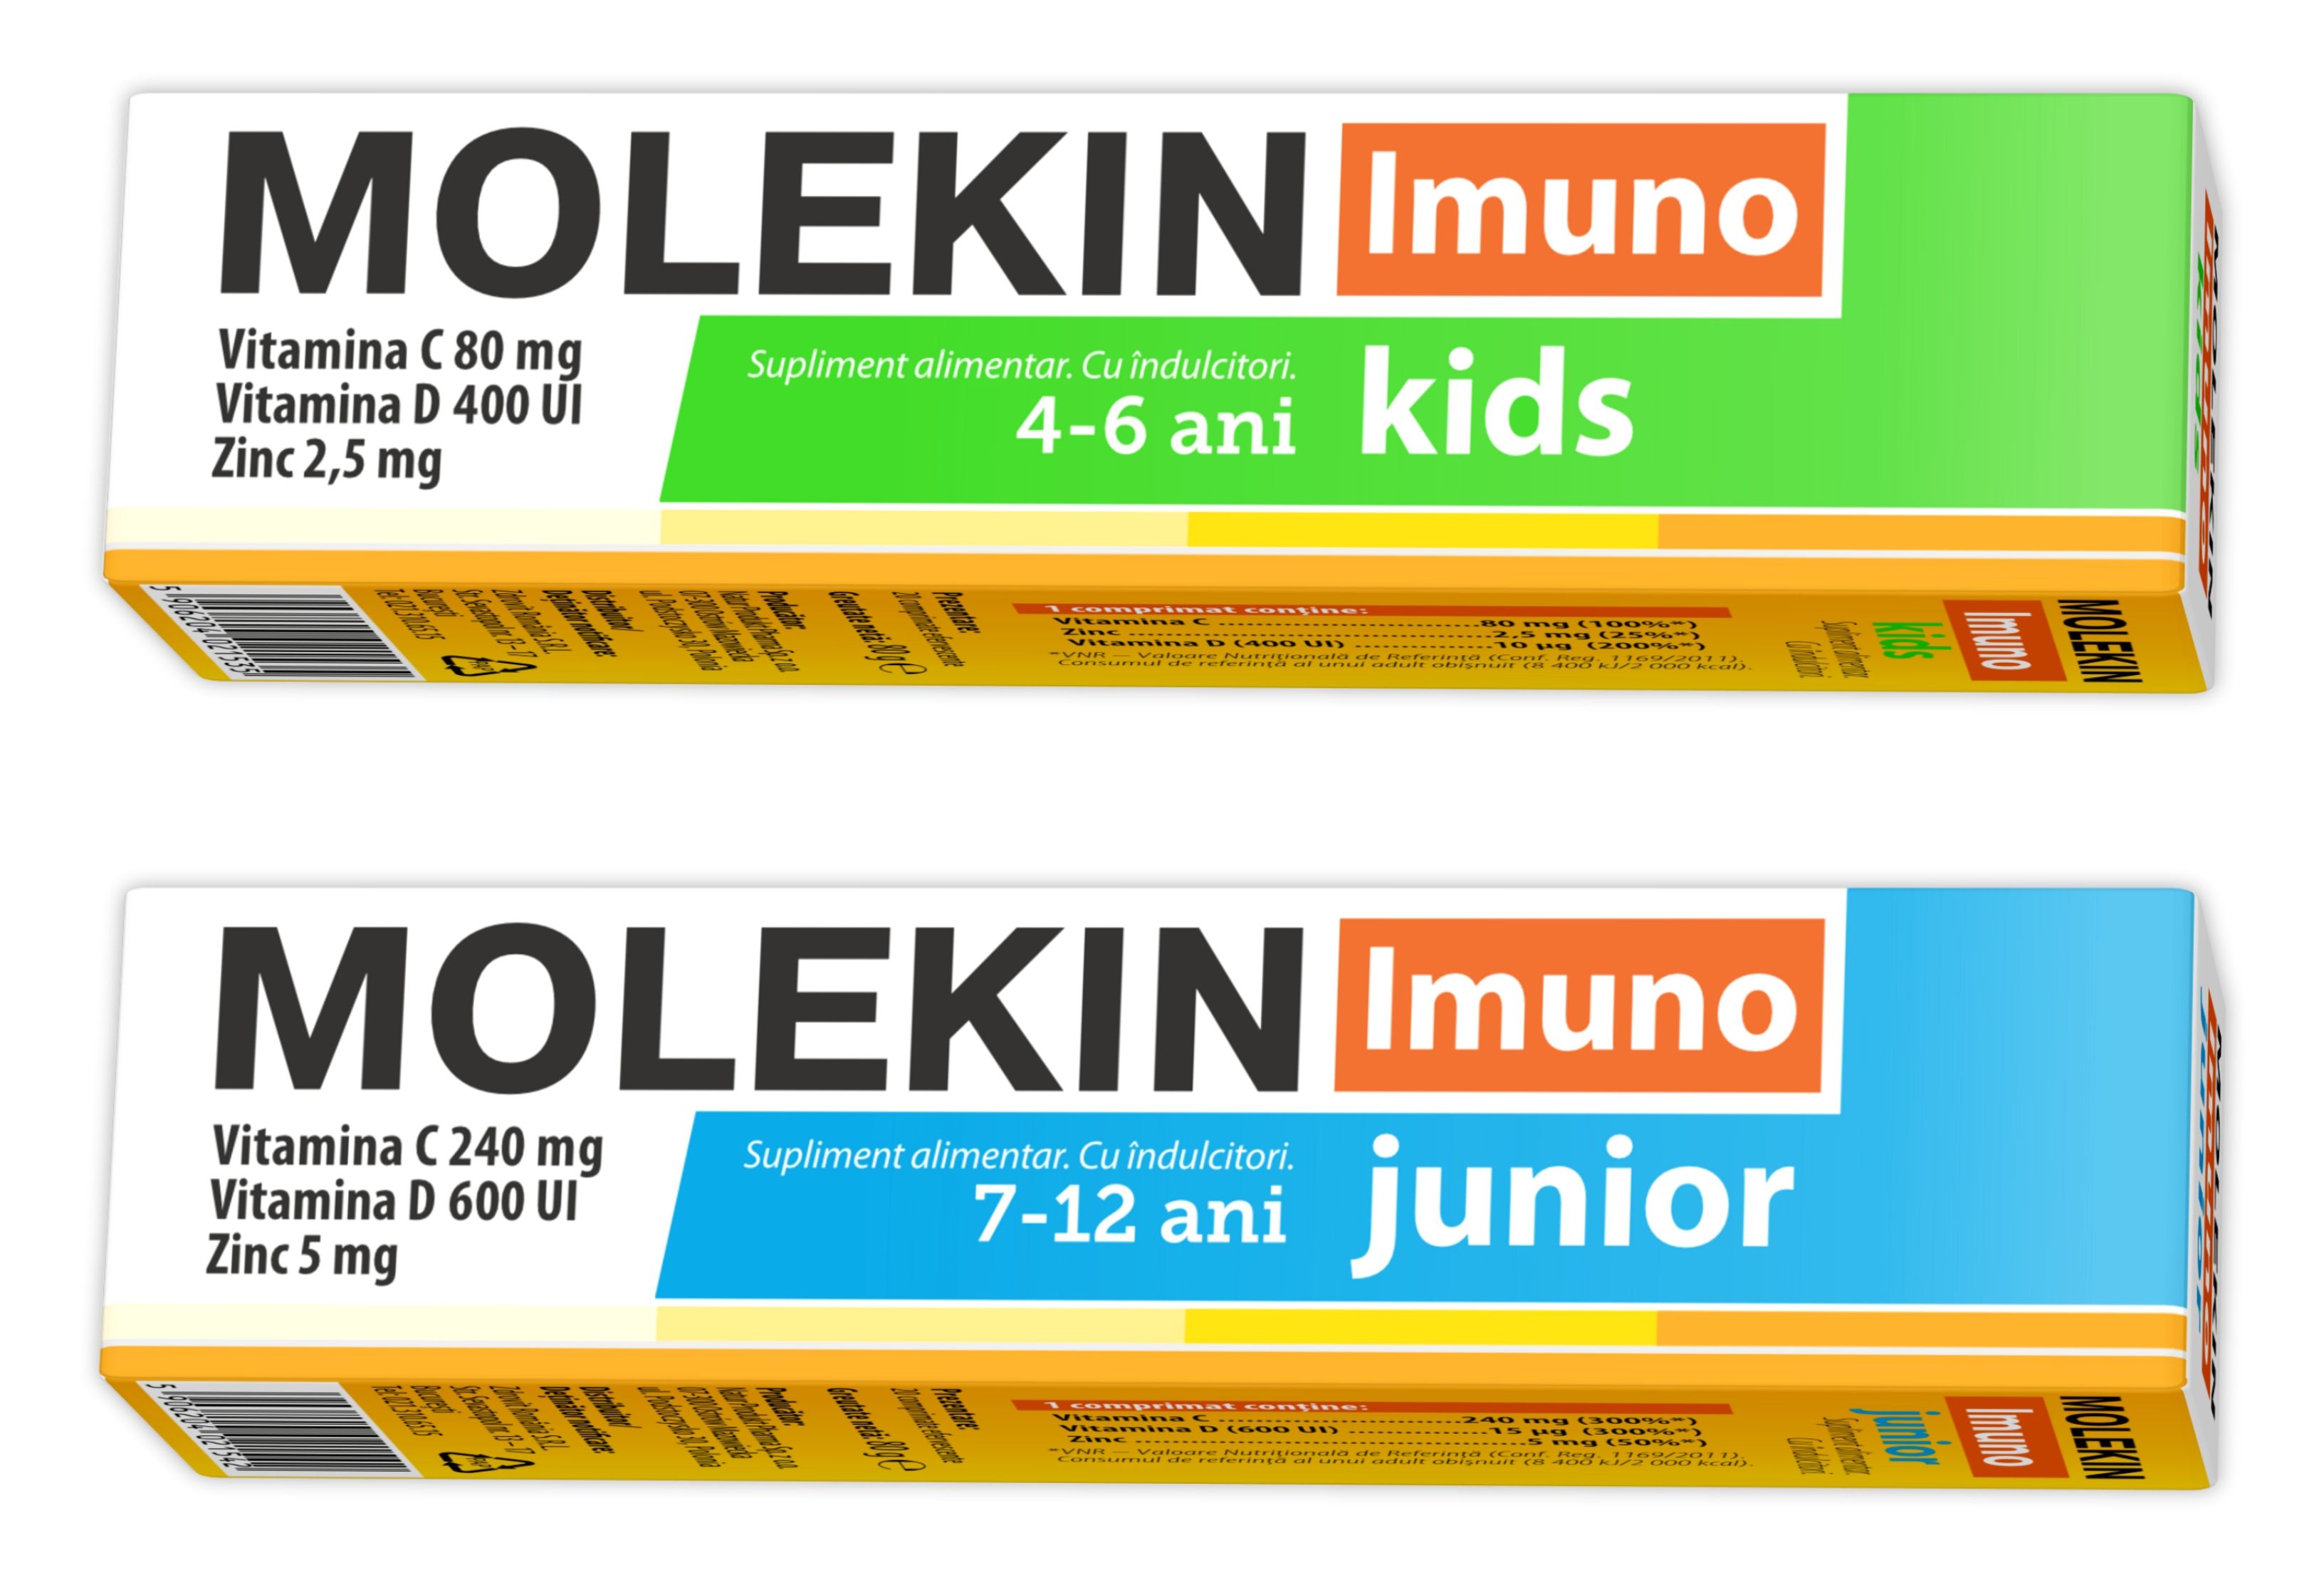 molekin immuno junior și molekin immuno kids